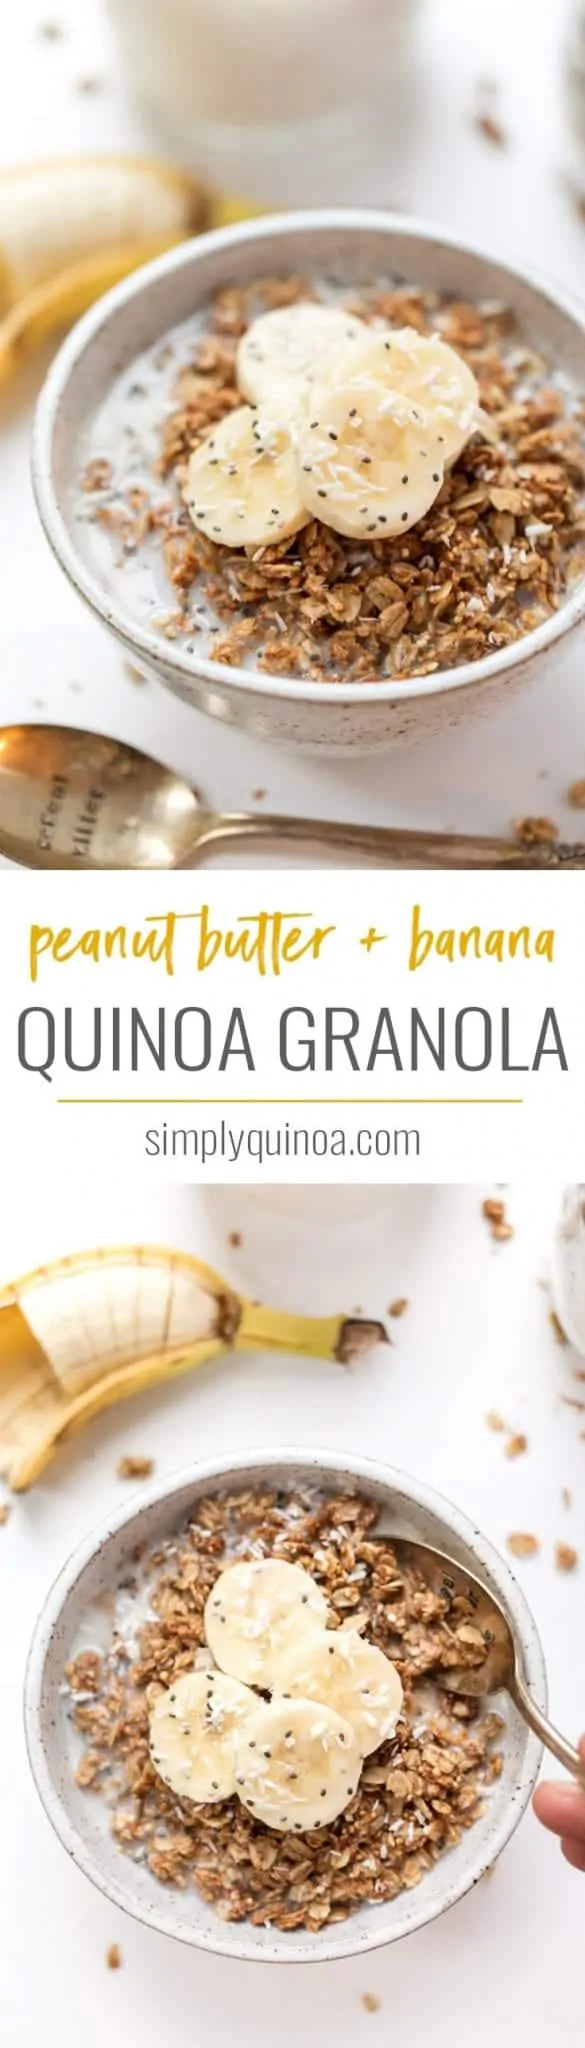 healthy peanut butter banana granola recipe